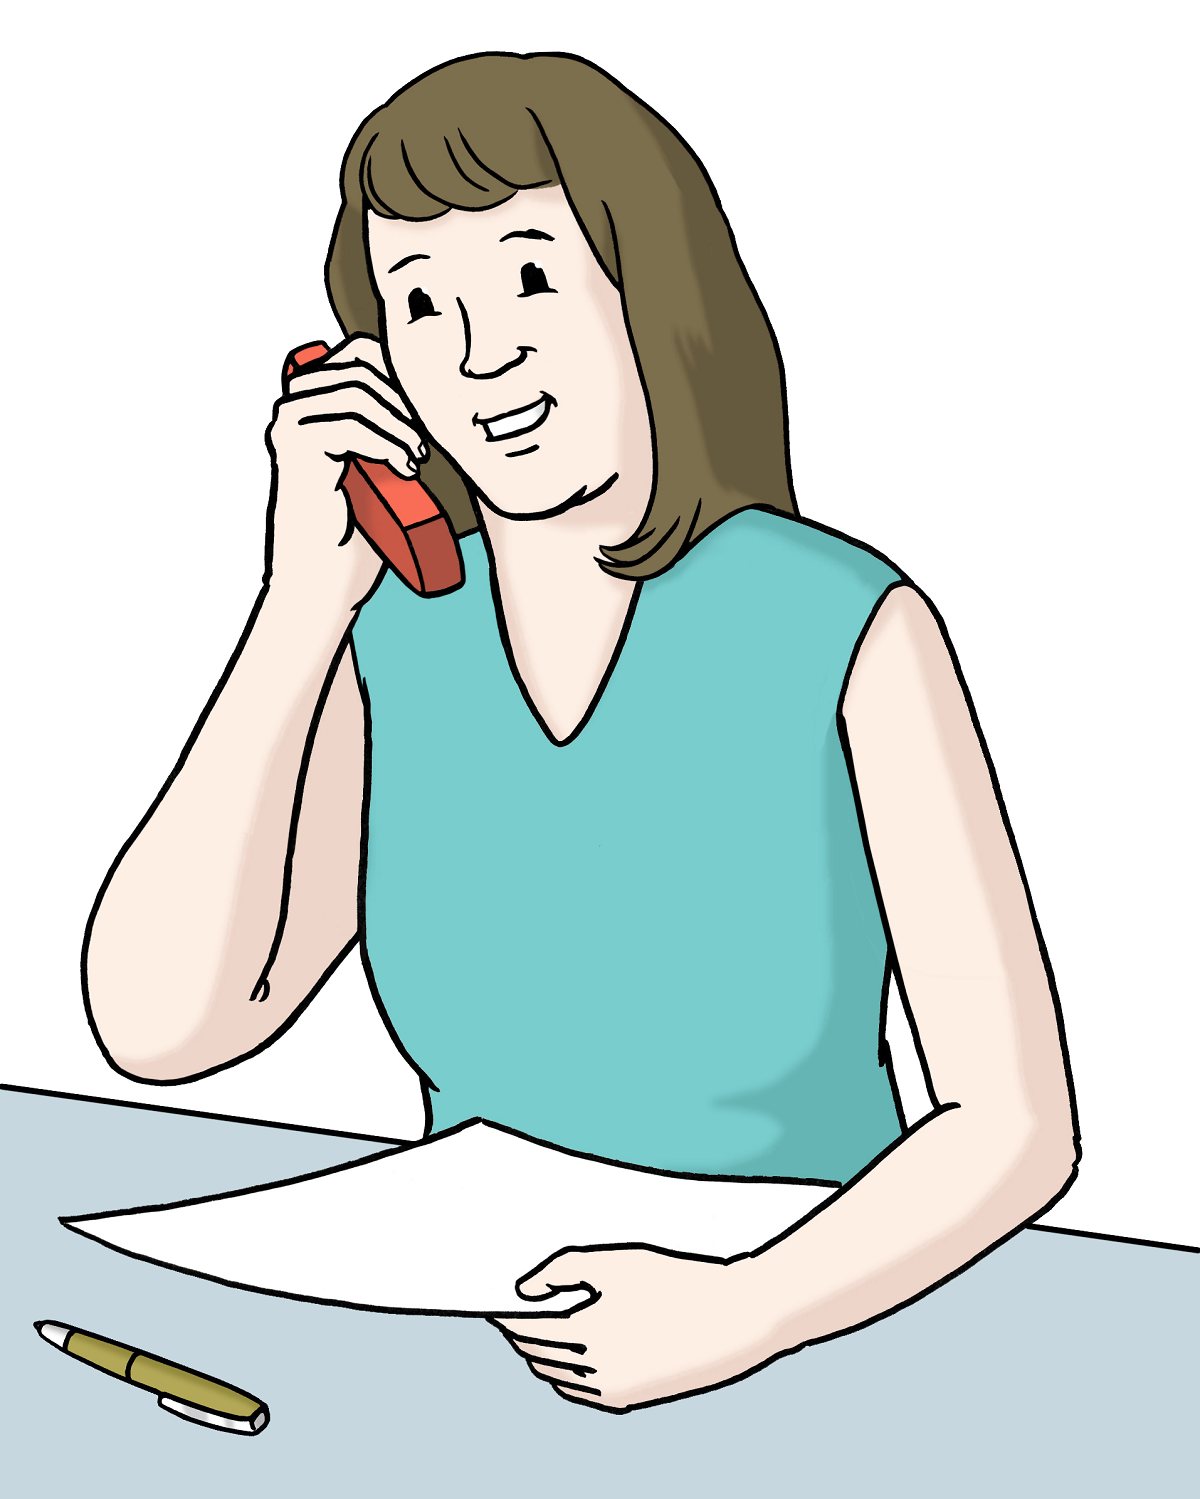 Zeichnung einer Frau am Telefon.